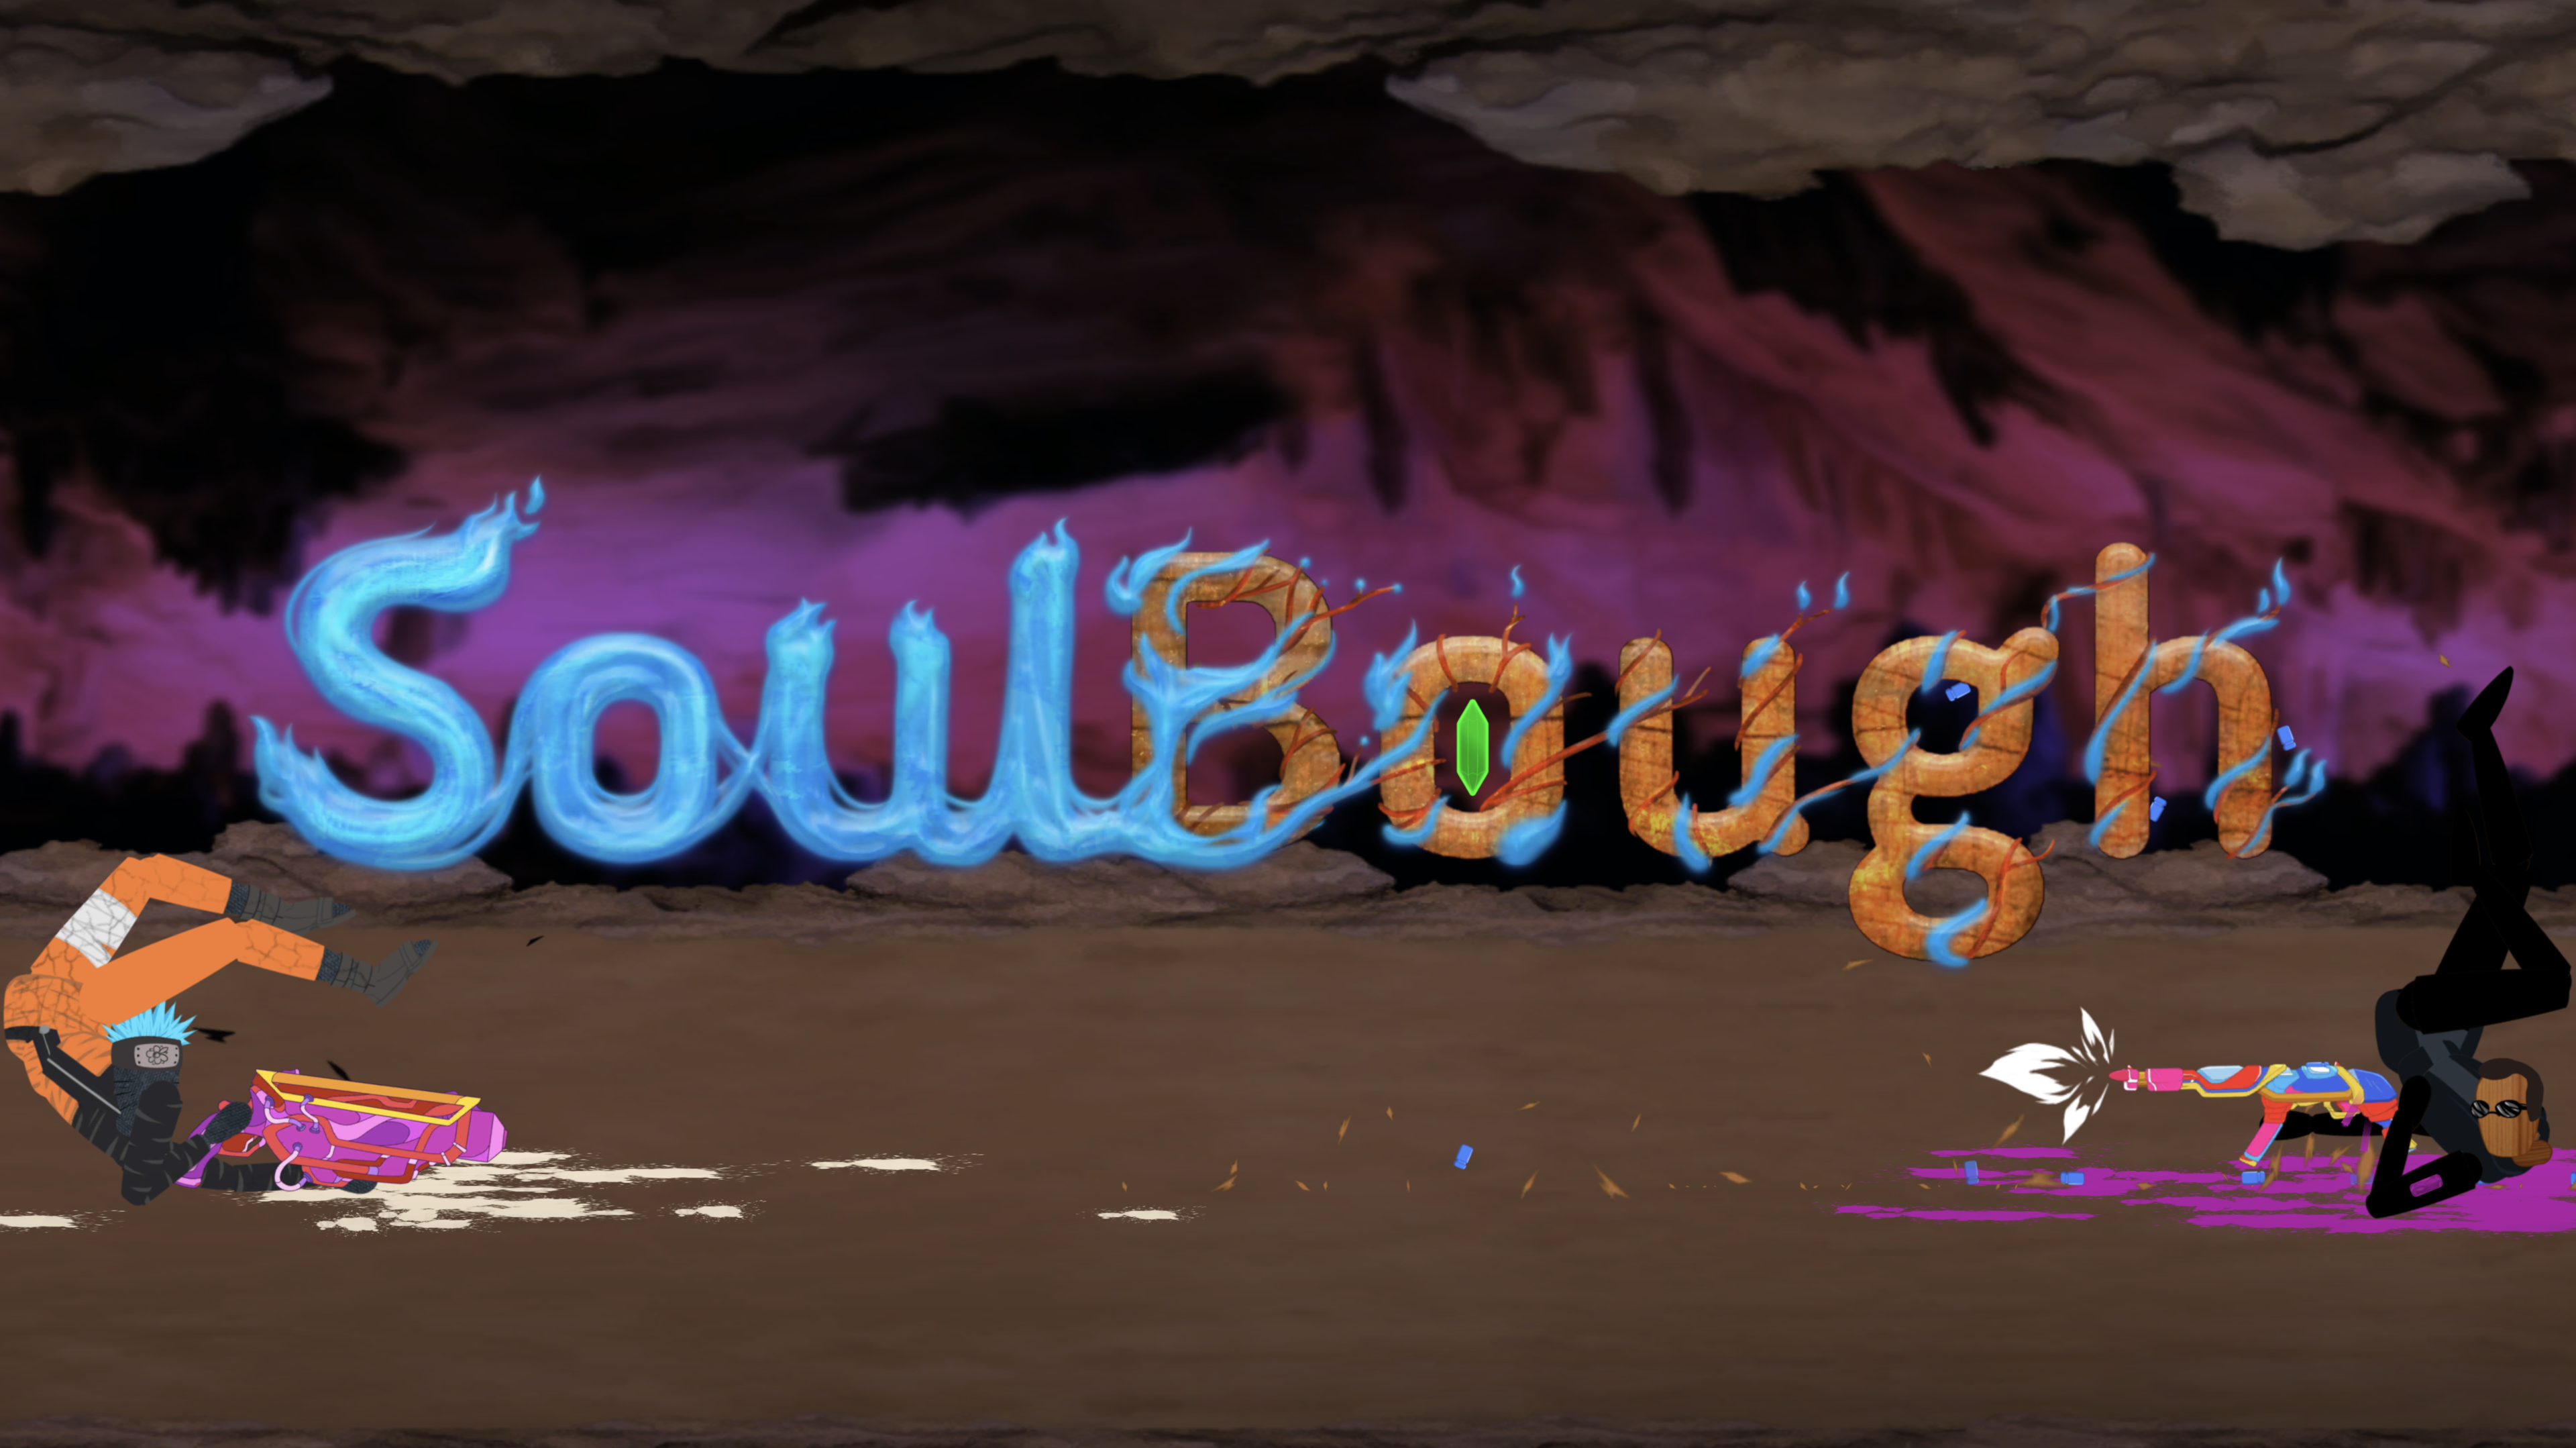 Screenshot 1 of Рэгдолл шутер SoulBough 0.97.1.1